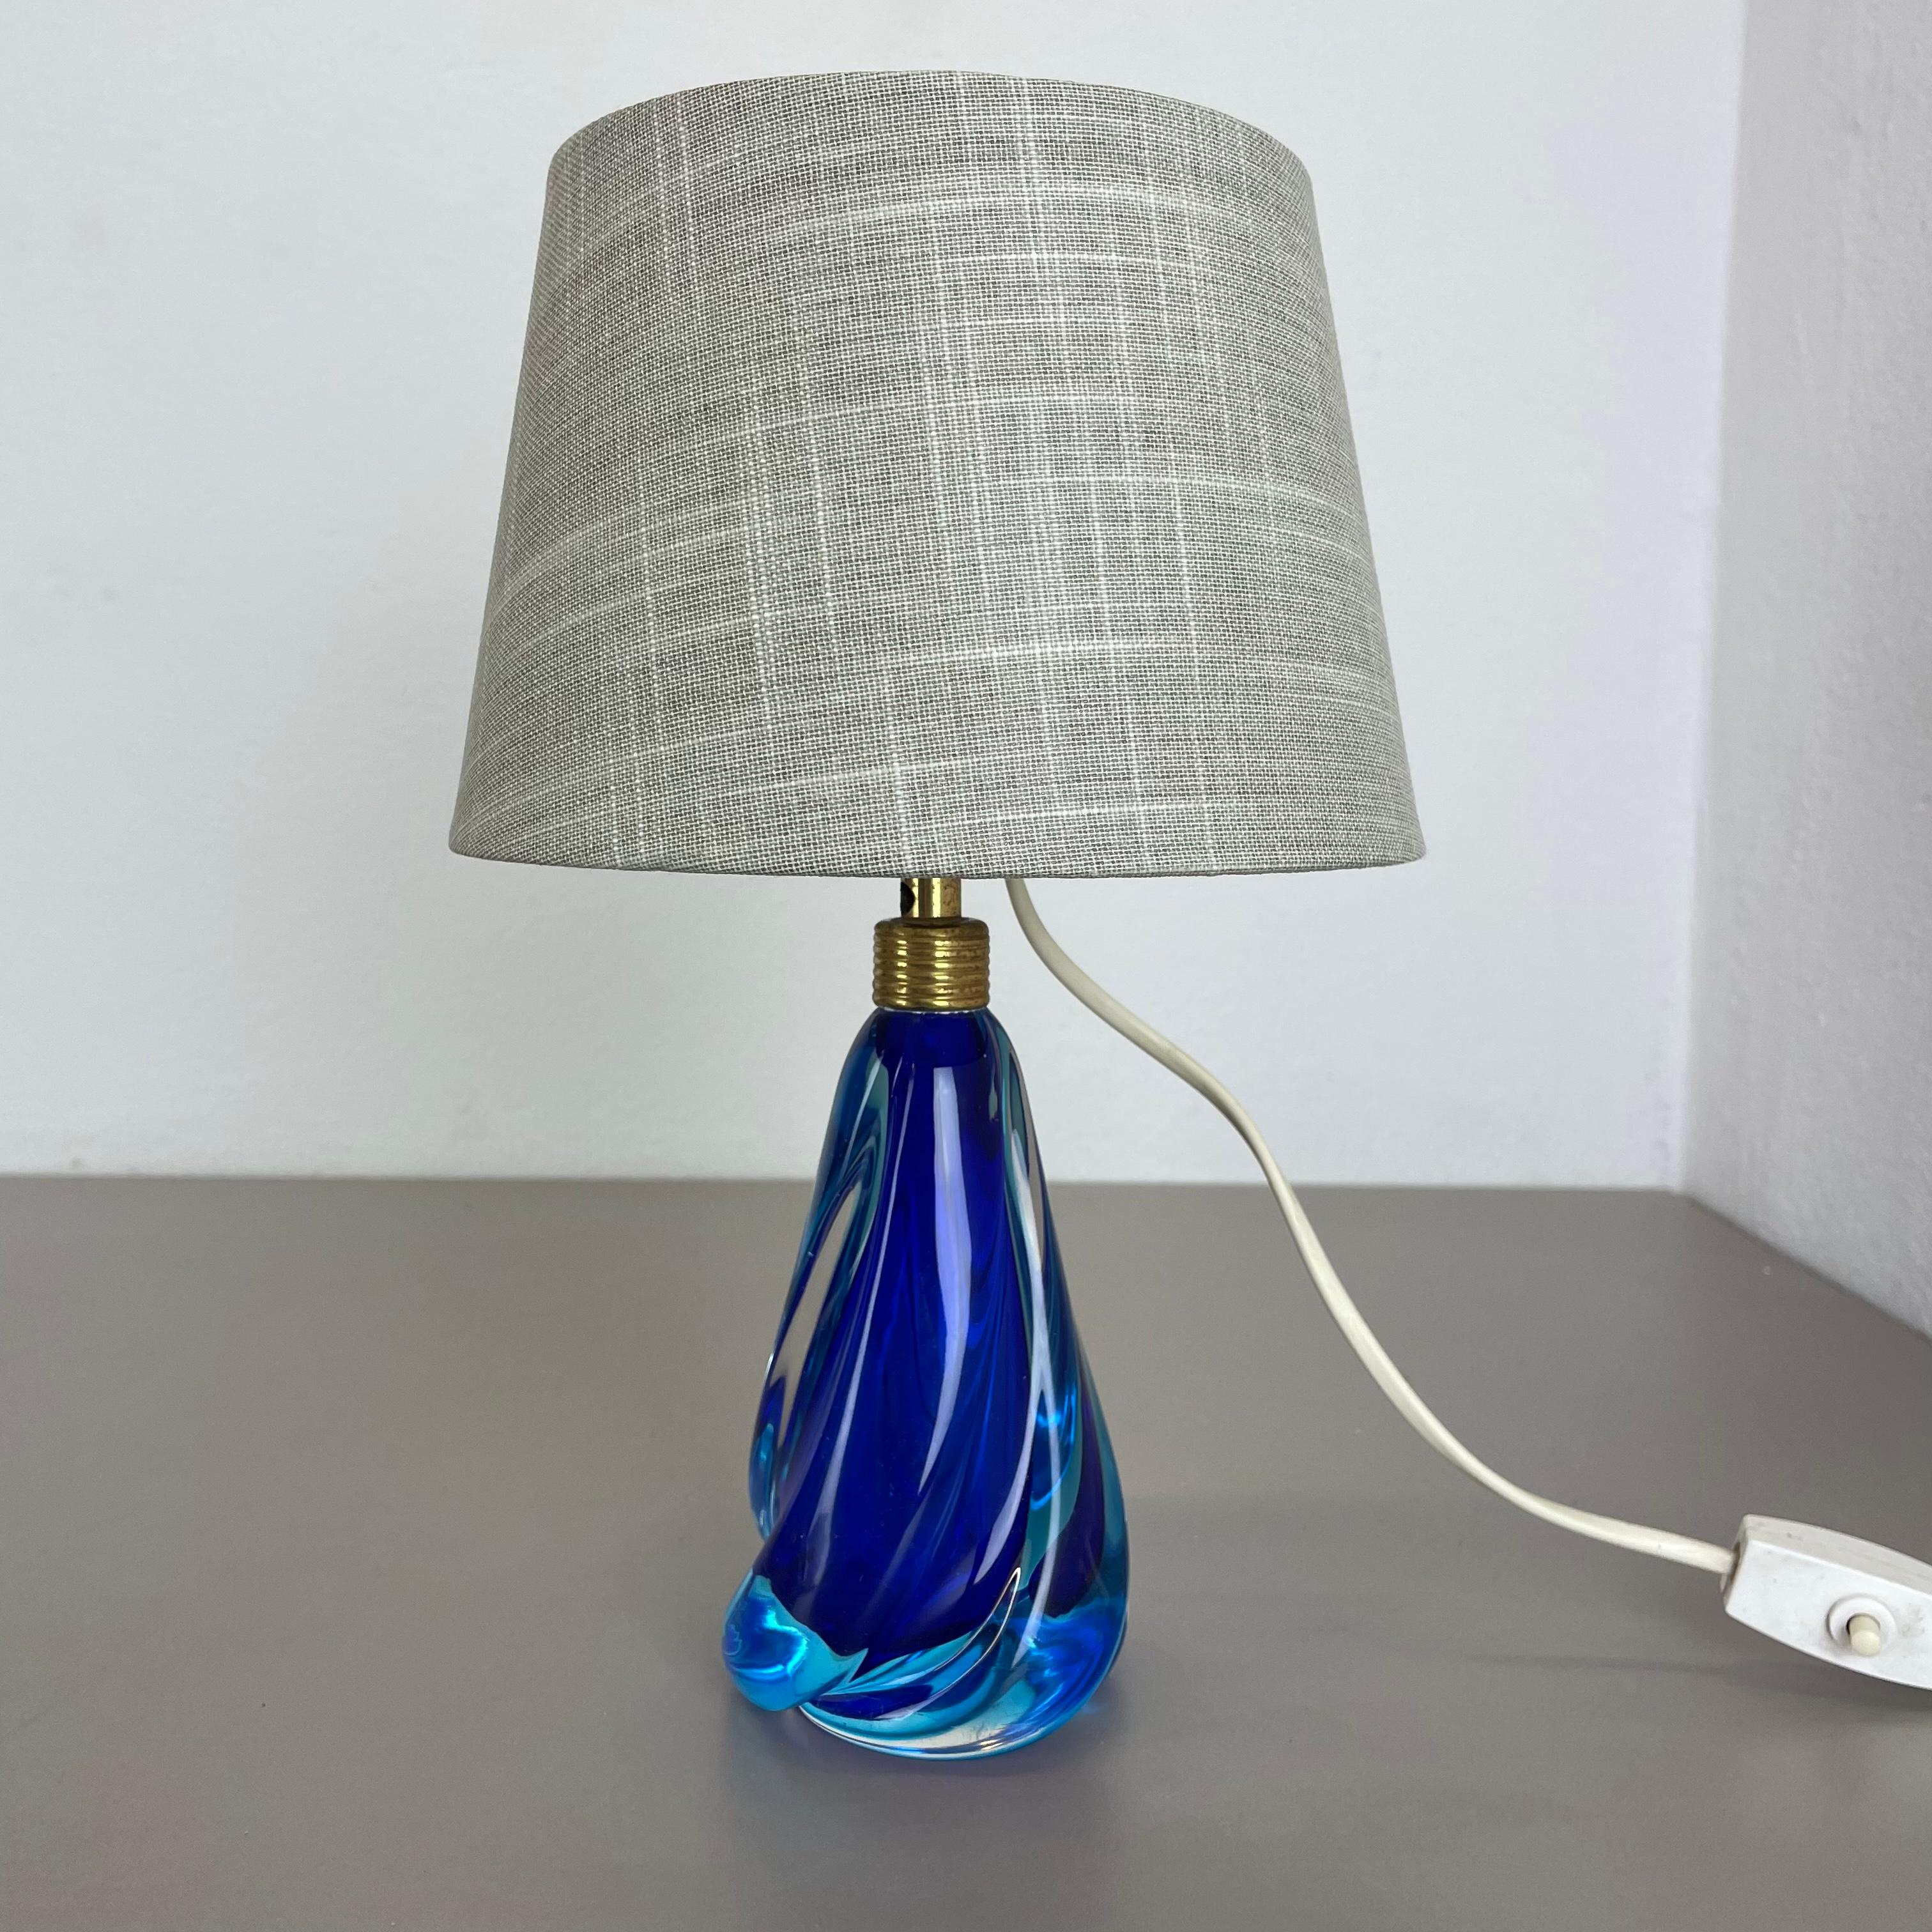 Article :

lampe de table lampe de bureau


Origine :

Murano, Italie


Âge :

1960s




Description :


Cette fantastique base de lampe de table vintage a été conçue et produite dans les années 1960 à Murano, en Italie. La base